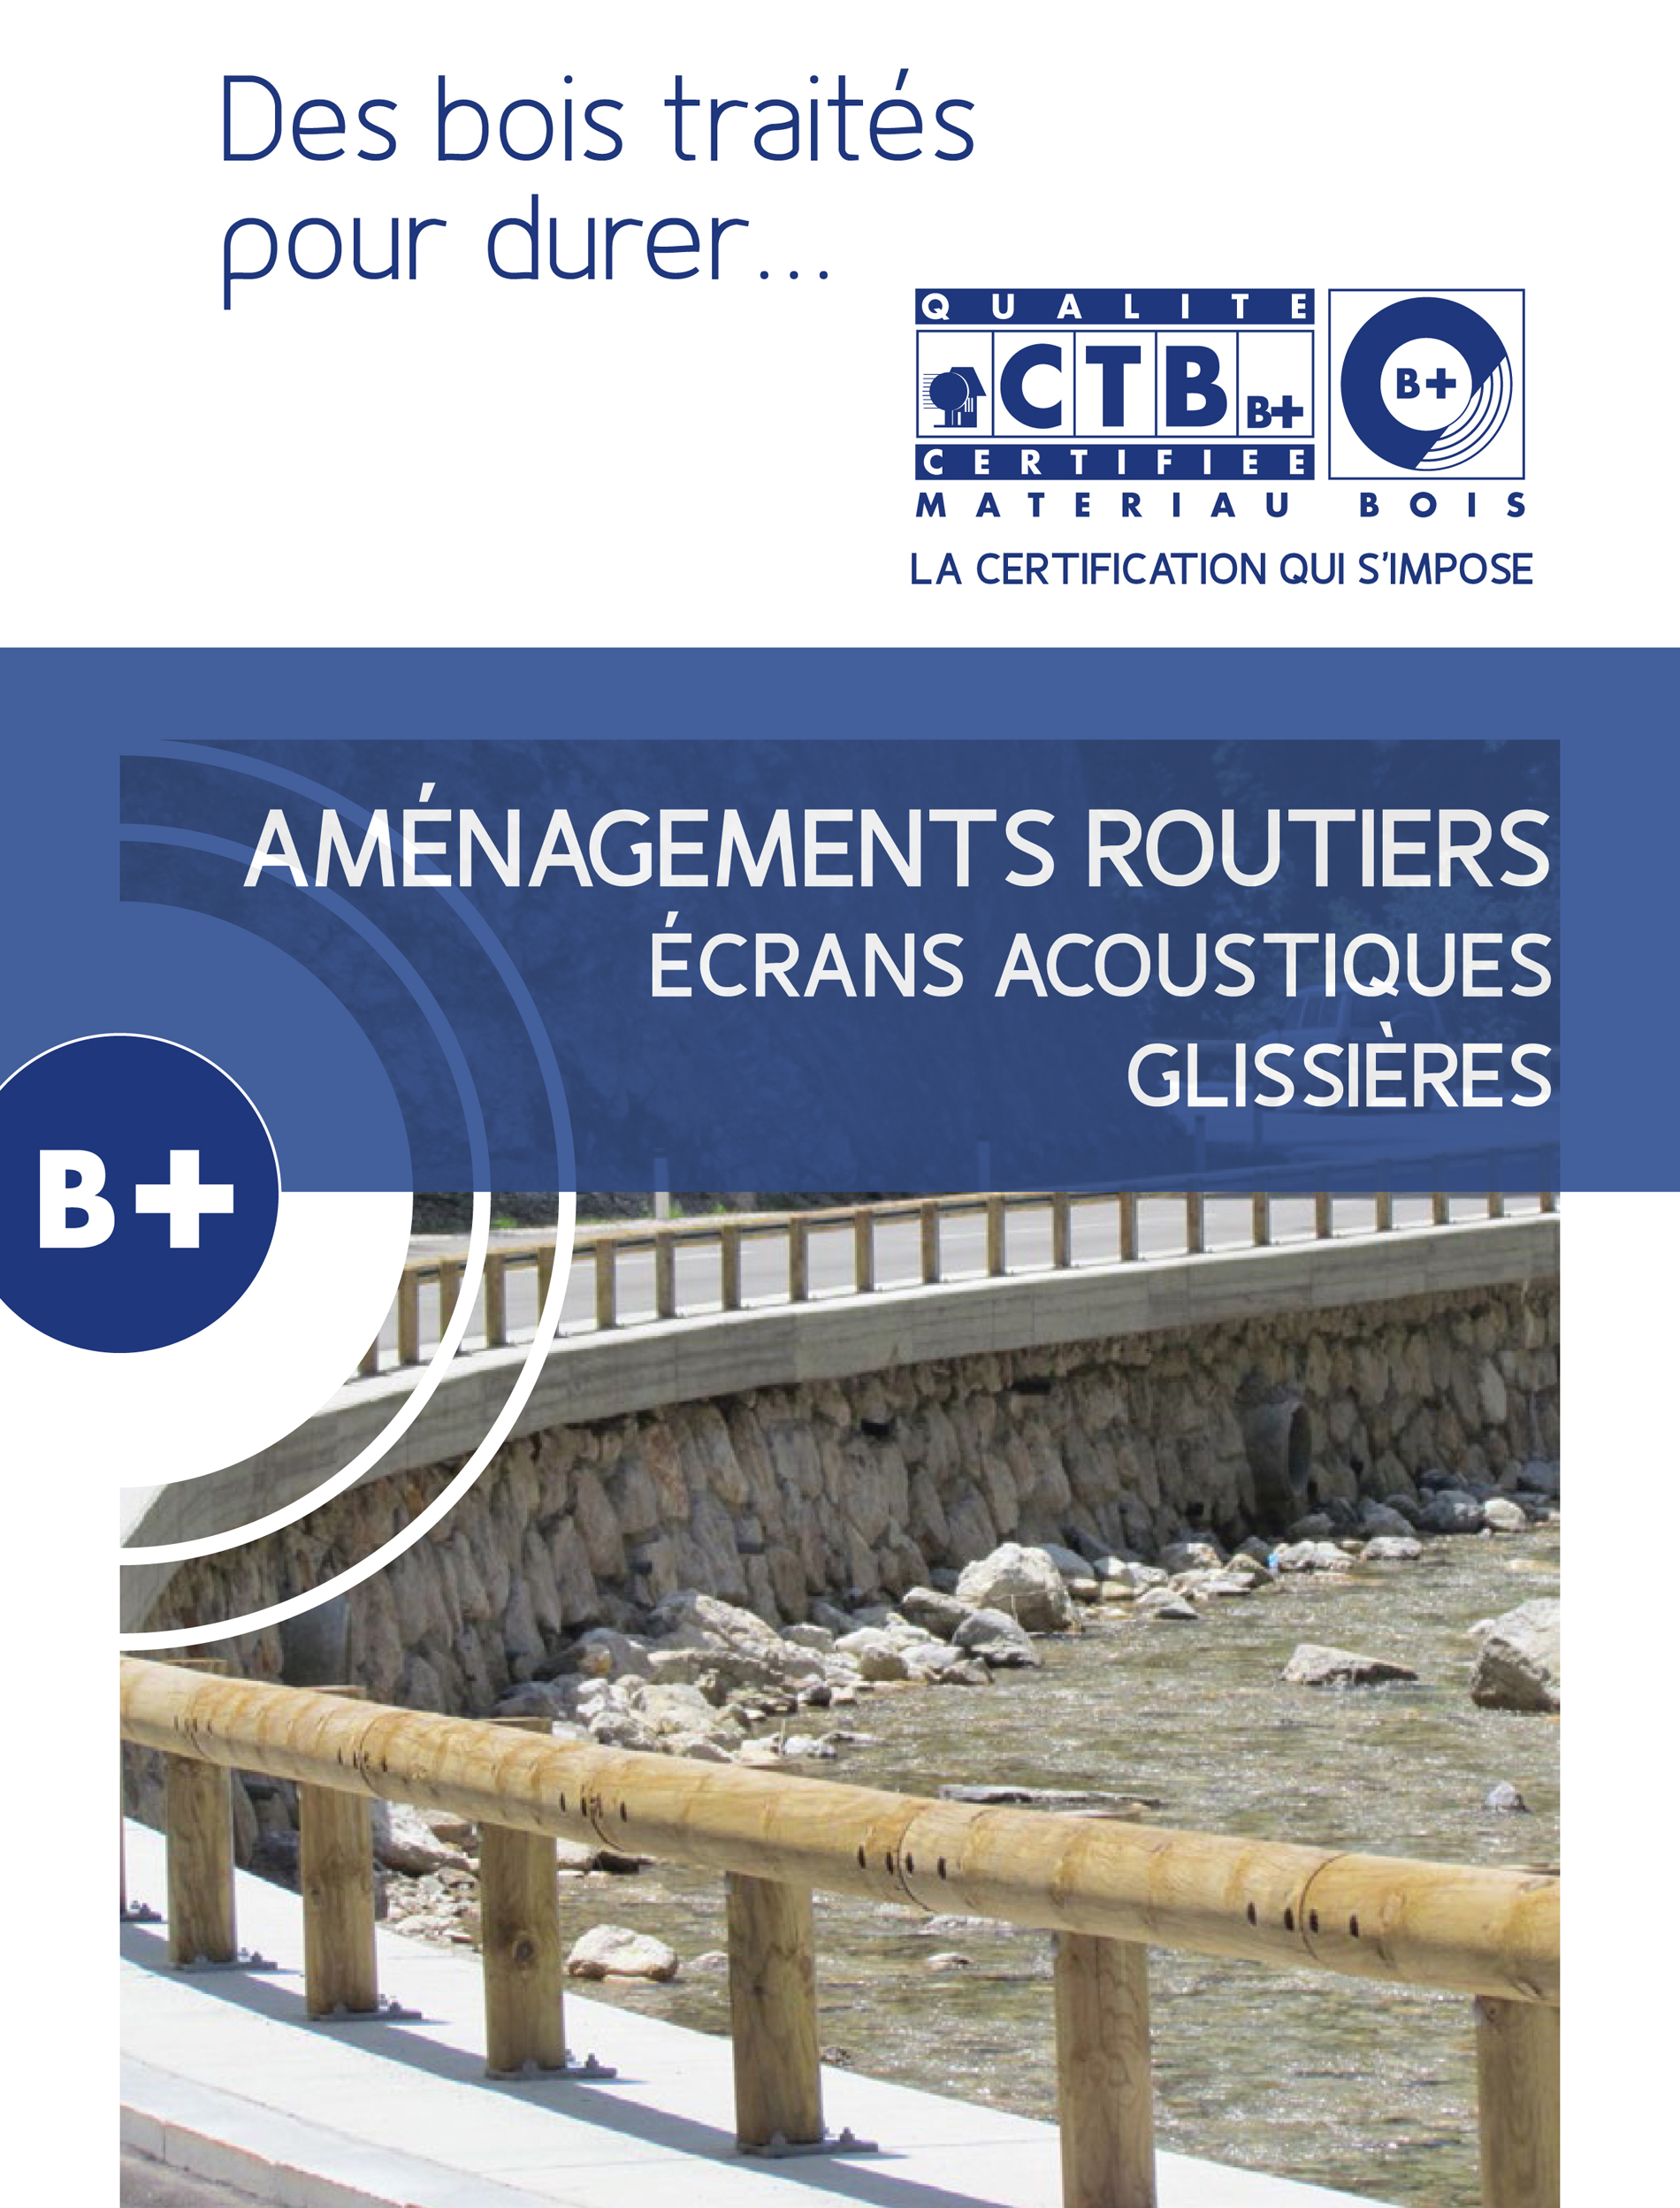 Aménagements extérieurs et aménagements routiers en bois : CTB-B+ publie de fiches pratiques destinées aux acteurs des travaux publics et aux collectivités locales